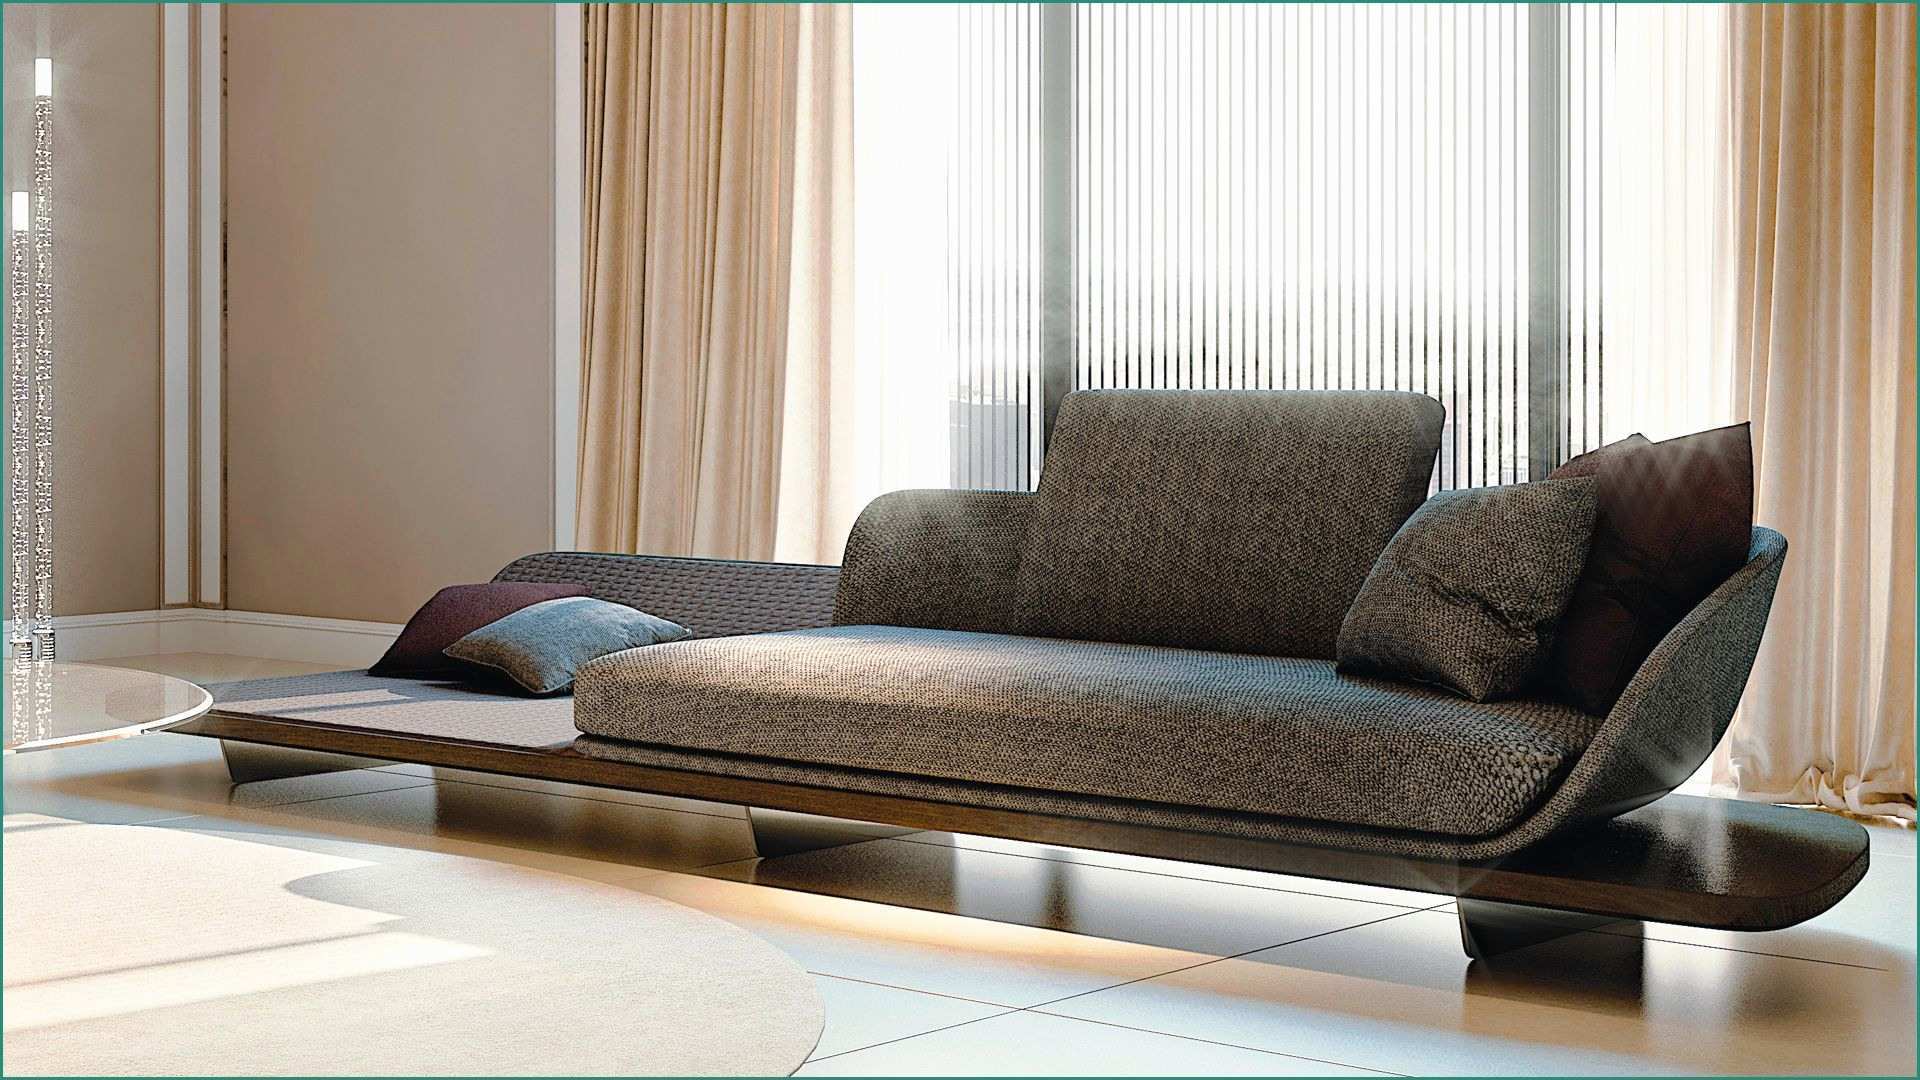 Chaise Longue Divano E Segno Chaise Loungeãçåçæå°çµæ Modern Furniture